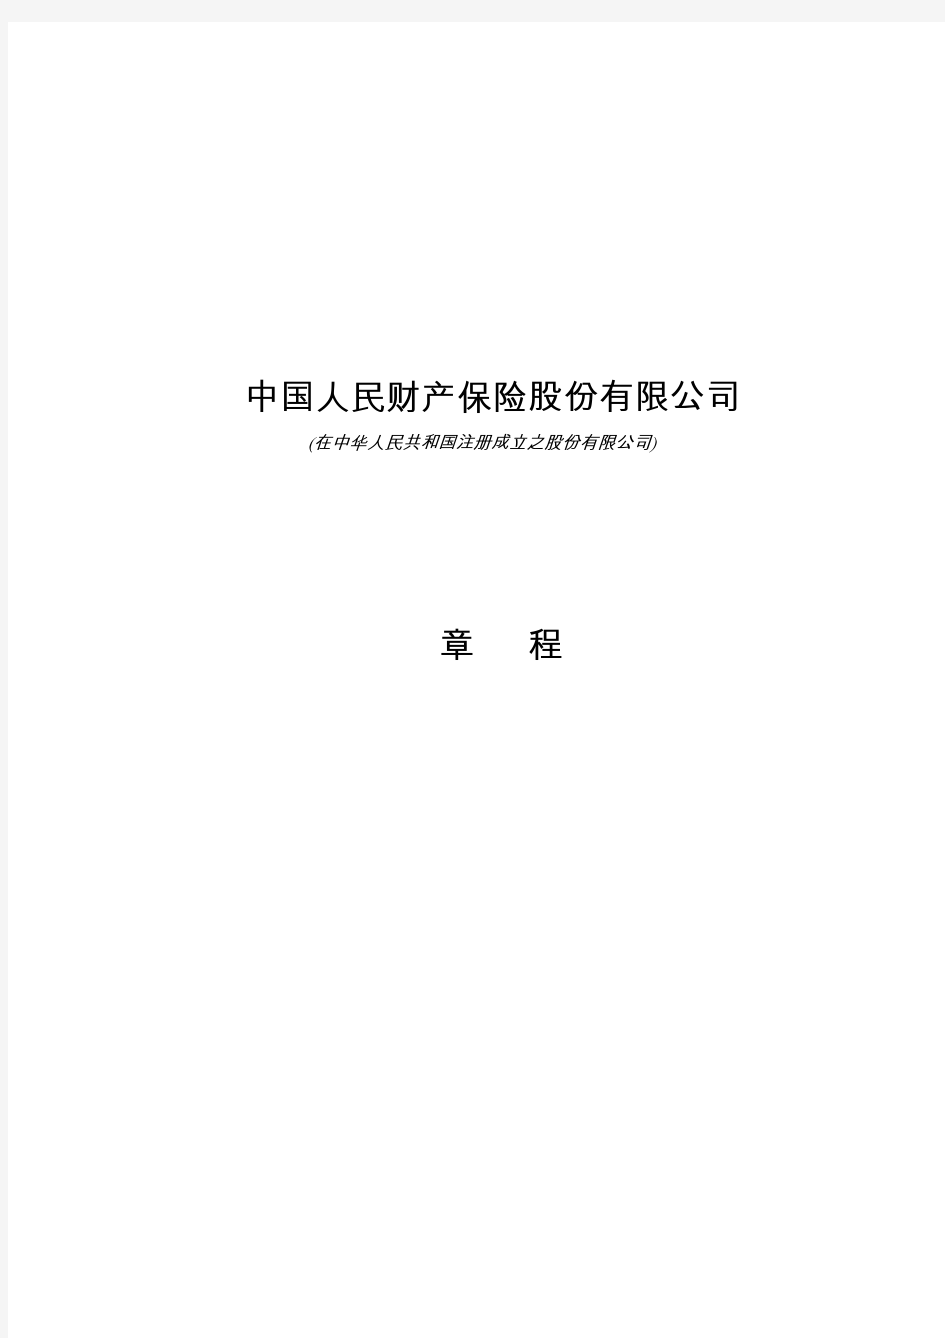 中国人民财产保险股份有限公司章程